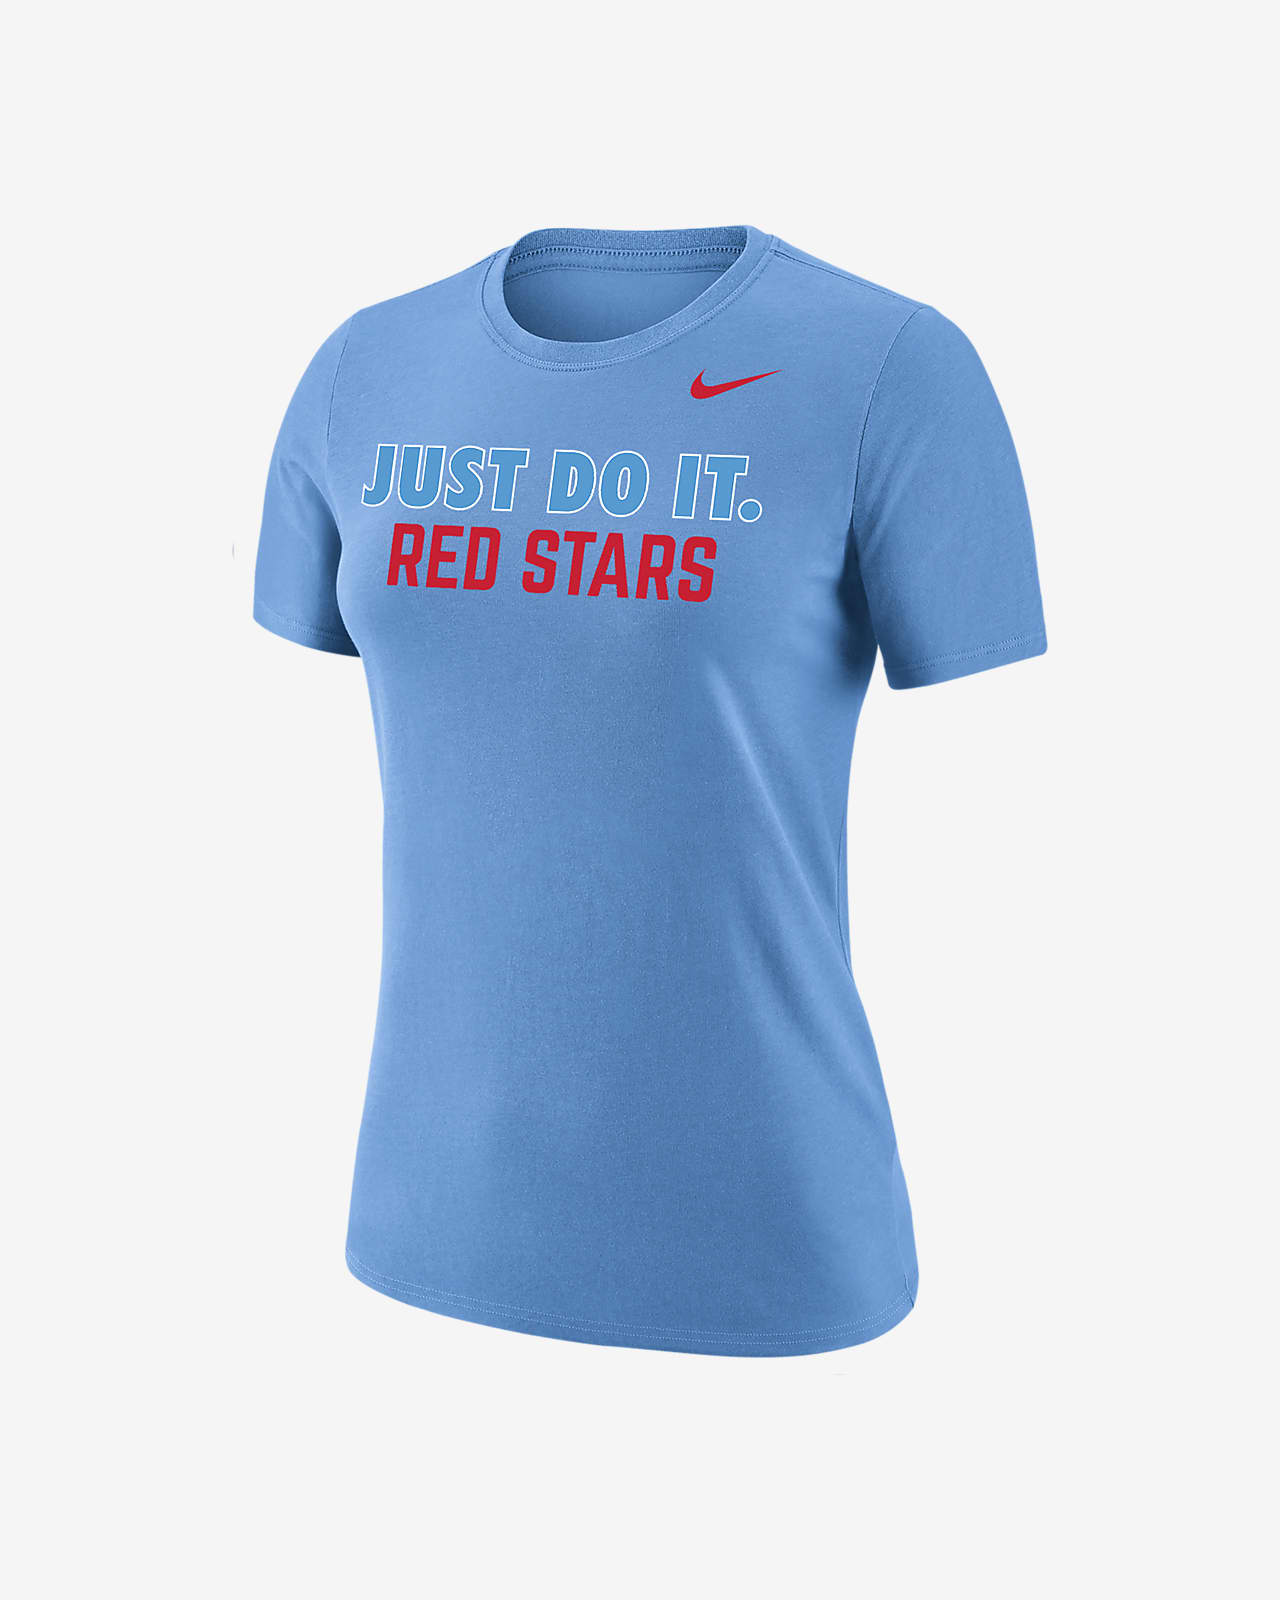 Chicago Red Stars Women's Nike Soccer T-Shirt. Nike.com